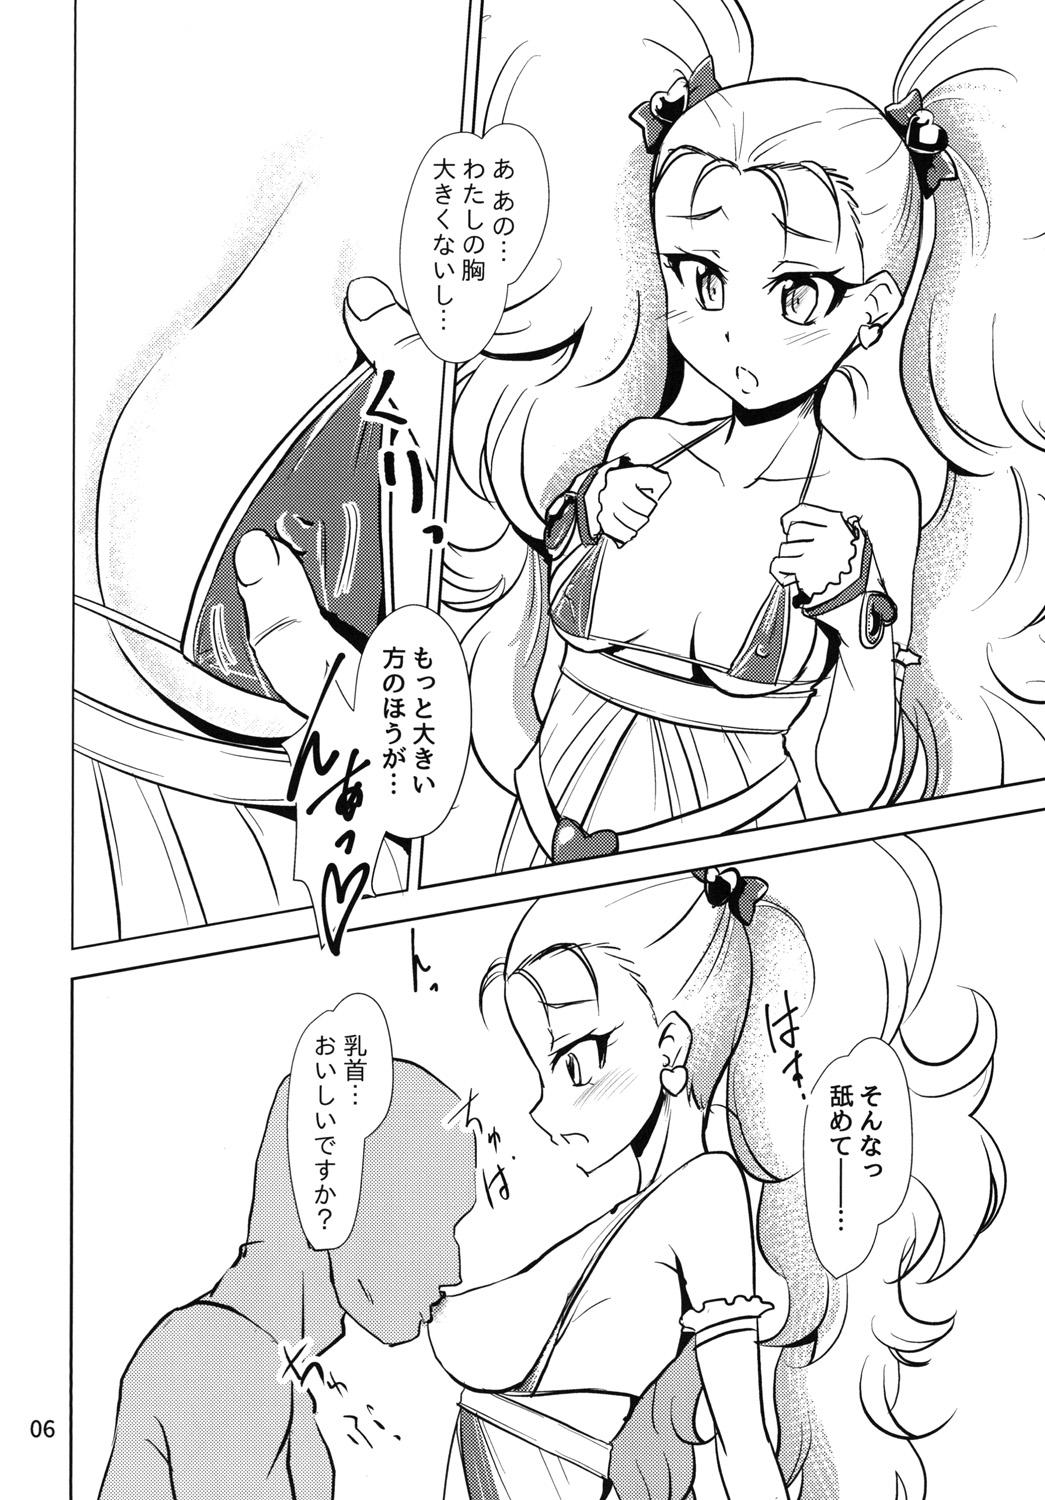 Threeway NamaCure - Kirakira precure a la mode Tgirls - Page 6